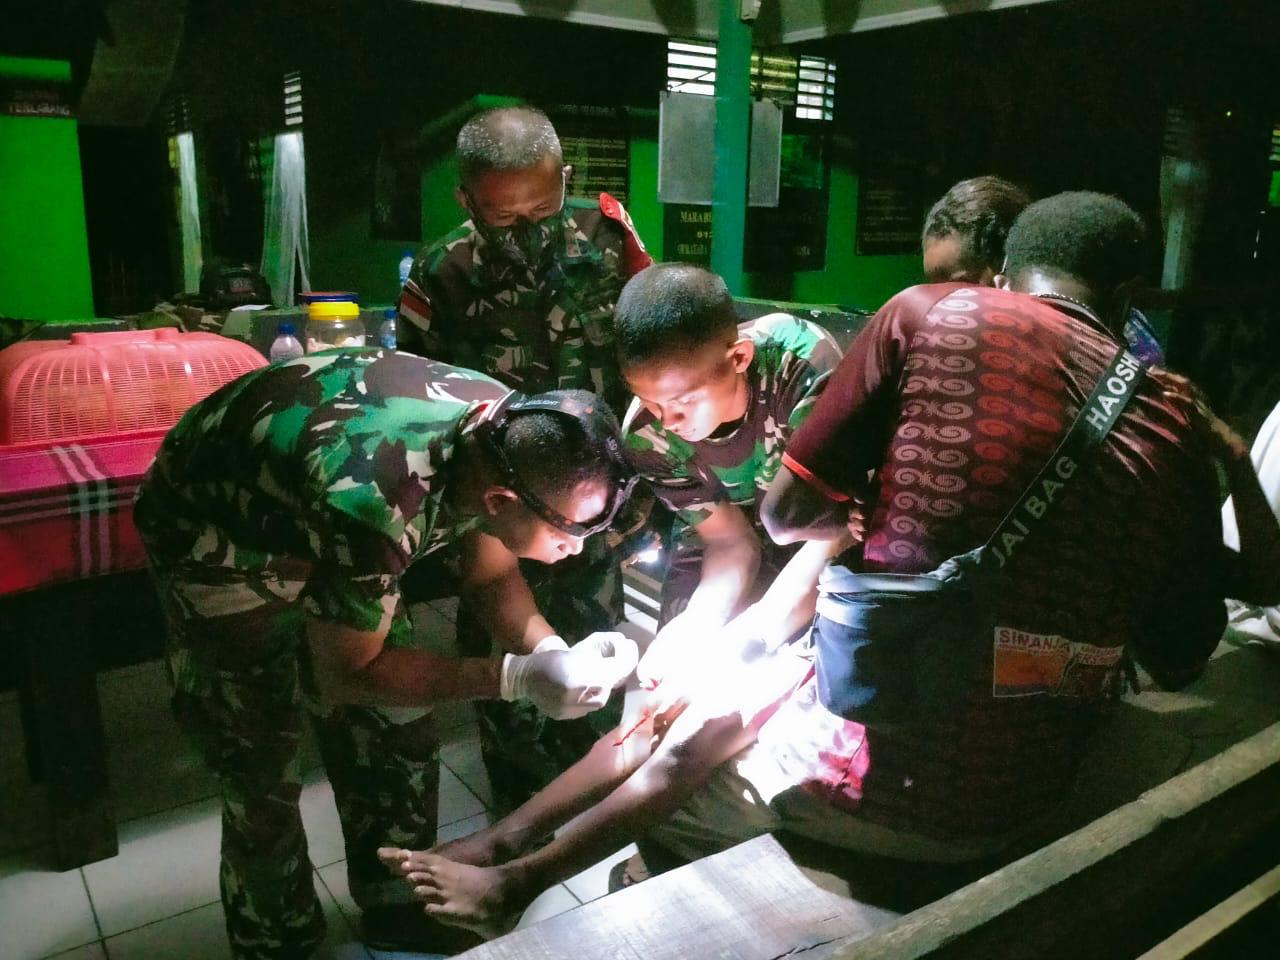 Dengan Sigap, Satgas Yonif 512 Obati Anak Kecil Yang Terluka Di Perbatasan Papua